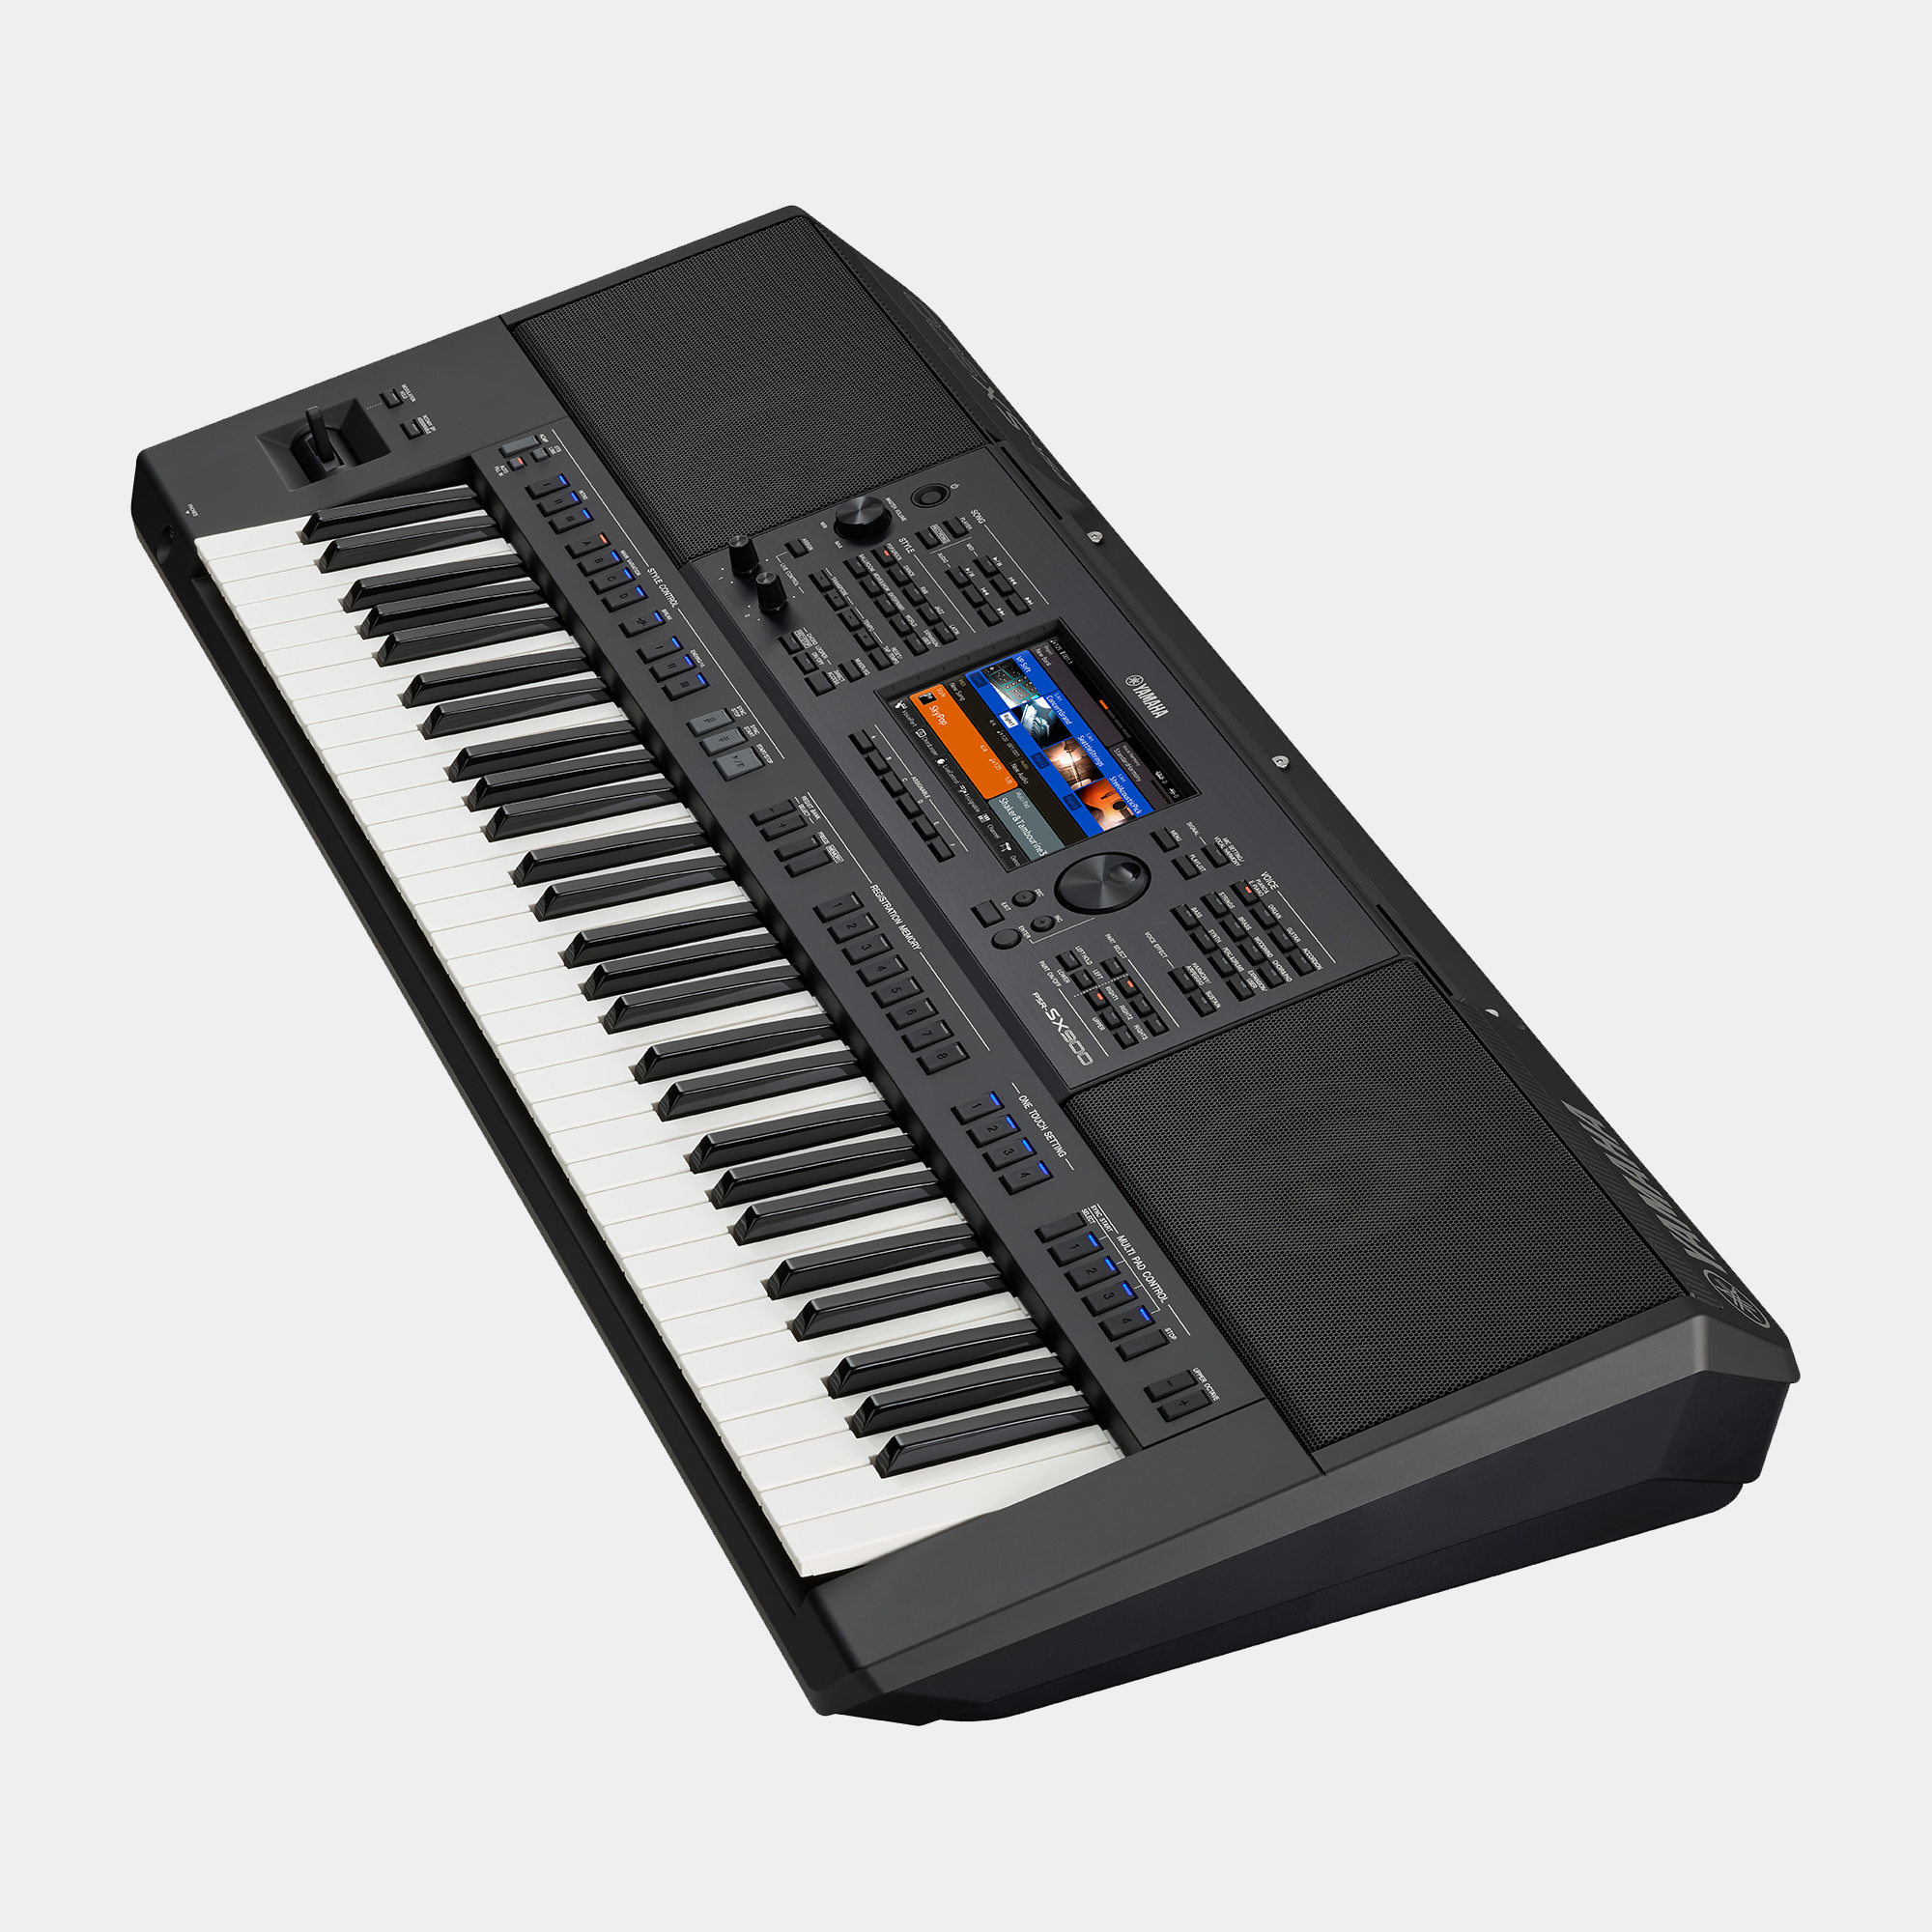 Đàn Organ điện tử, Keyboard Workstation - Yamaha PSR-SX900 (PSR SX900) - Chinh phục đỉnh cao âm nhạc - Hàng chính hãng